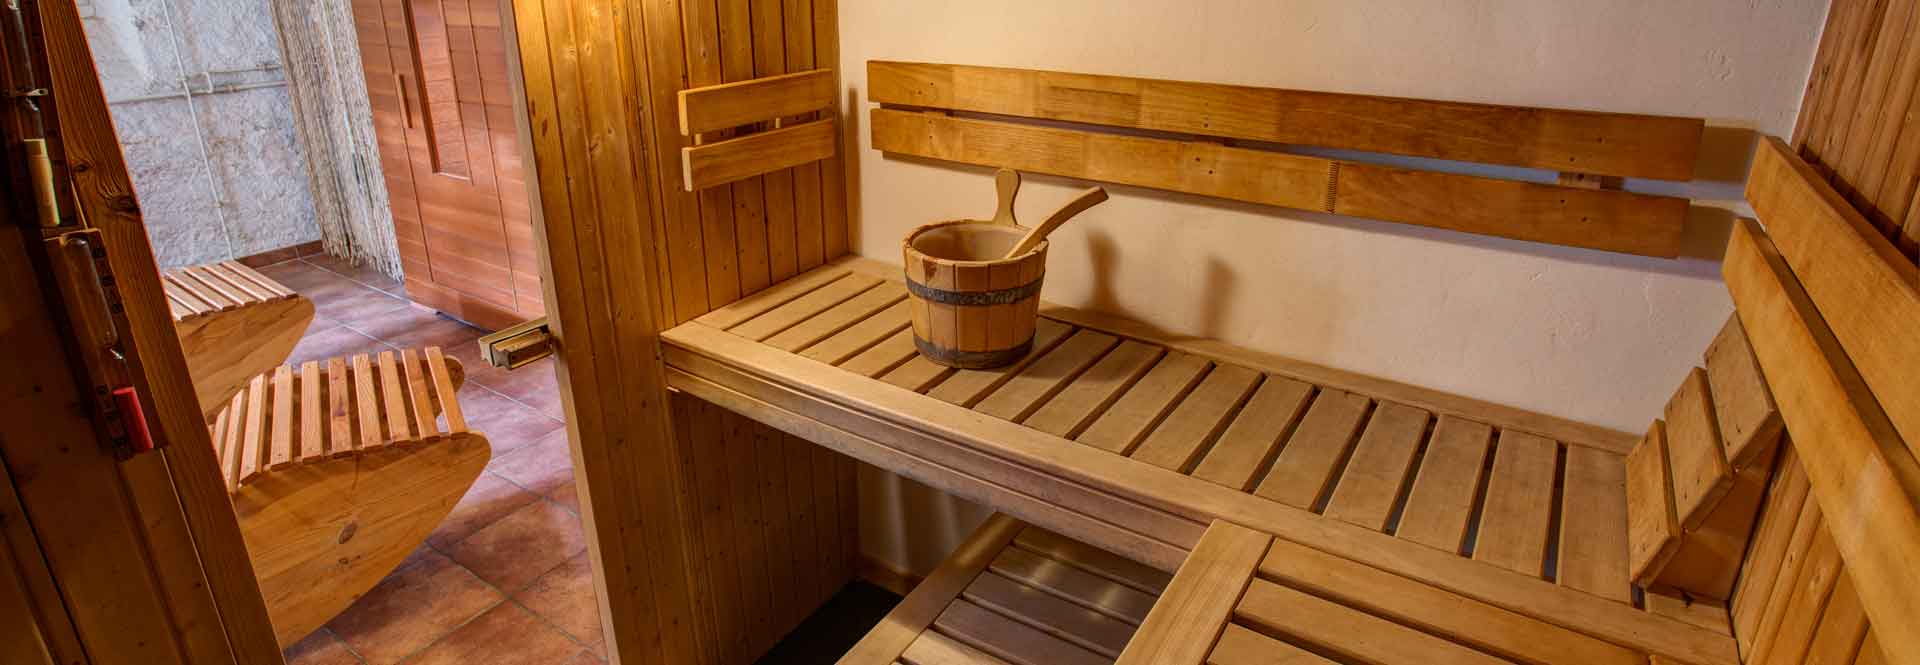 heerlijk in de sauna zweten